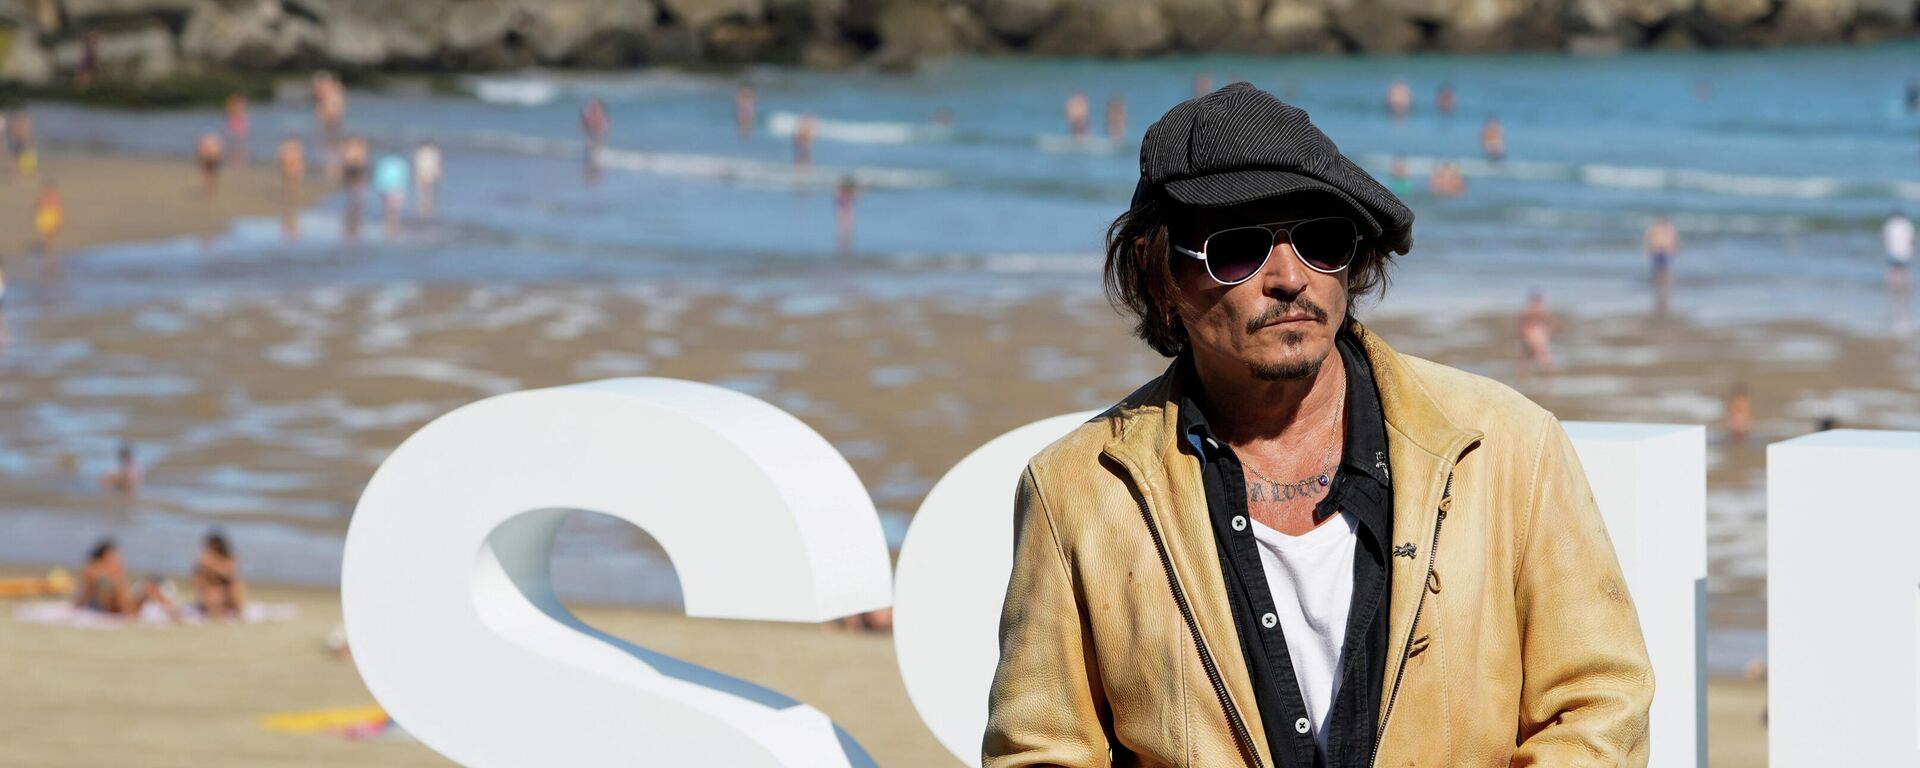 El actor y productor de cine estadounidense Johnny Depp participa en una sesión de fotos para promocionar el documental Crock Of Gold: A few rounds with Shane Macgowan, en el Festival de Cine de San Sebastián, España, el 20 de septiembre de 2020 - Sputnik Mundo, 1920, 13.09.2021